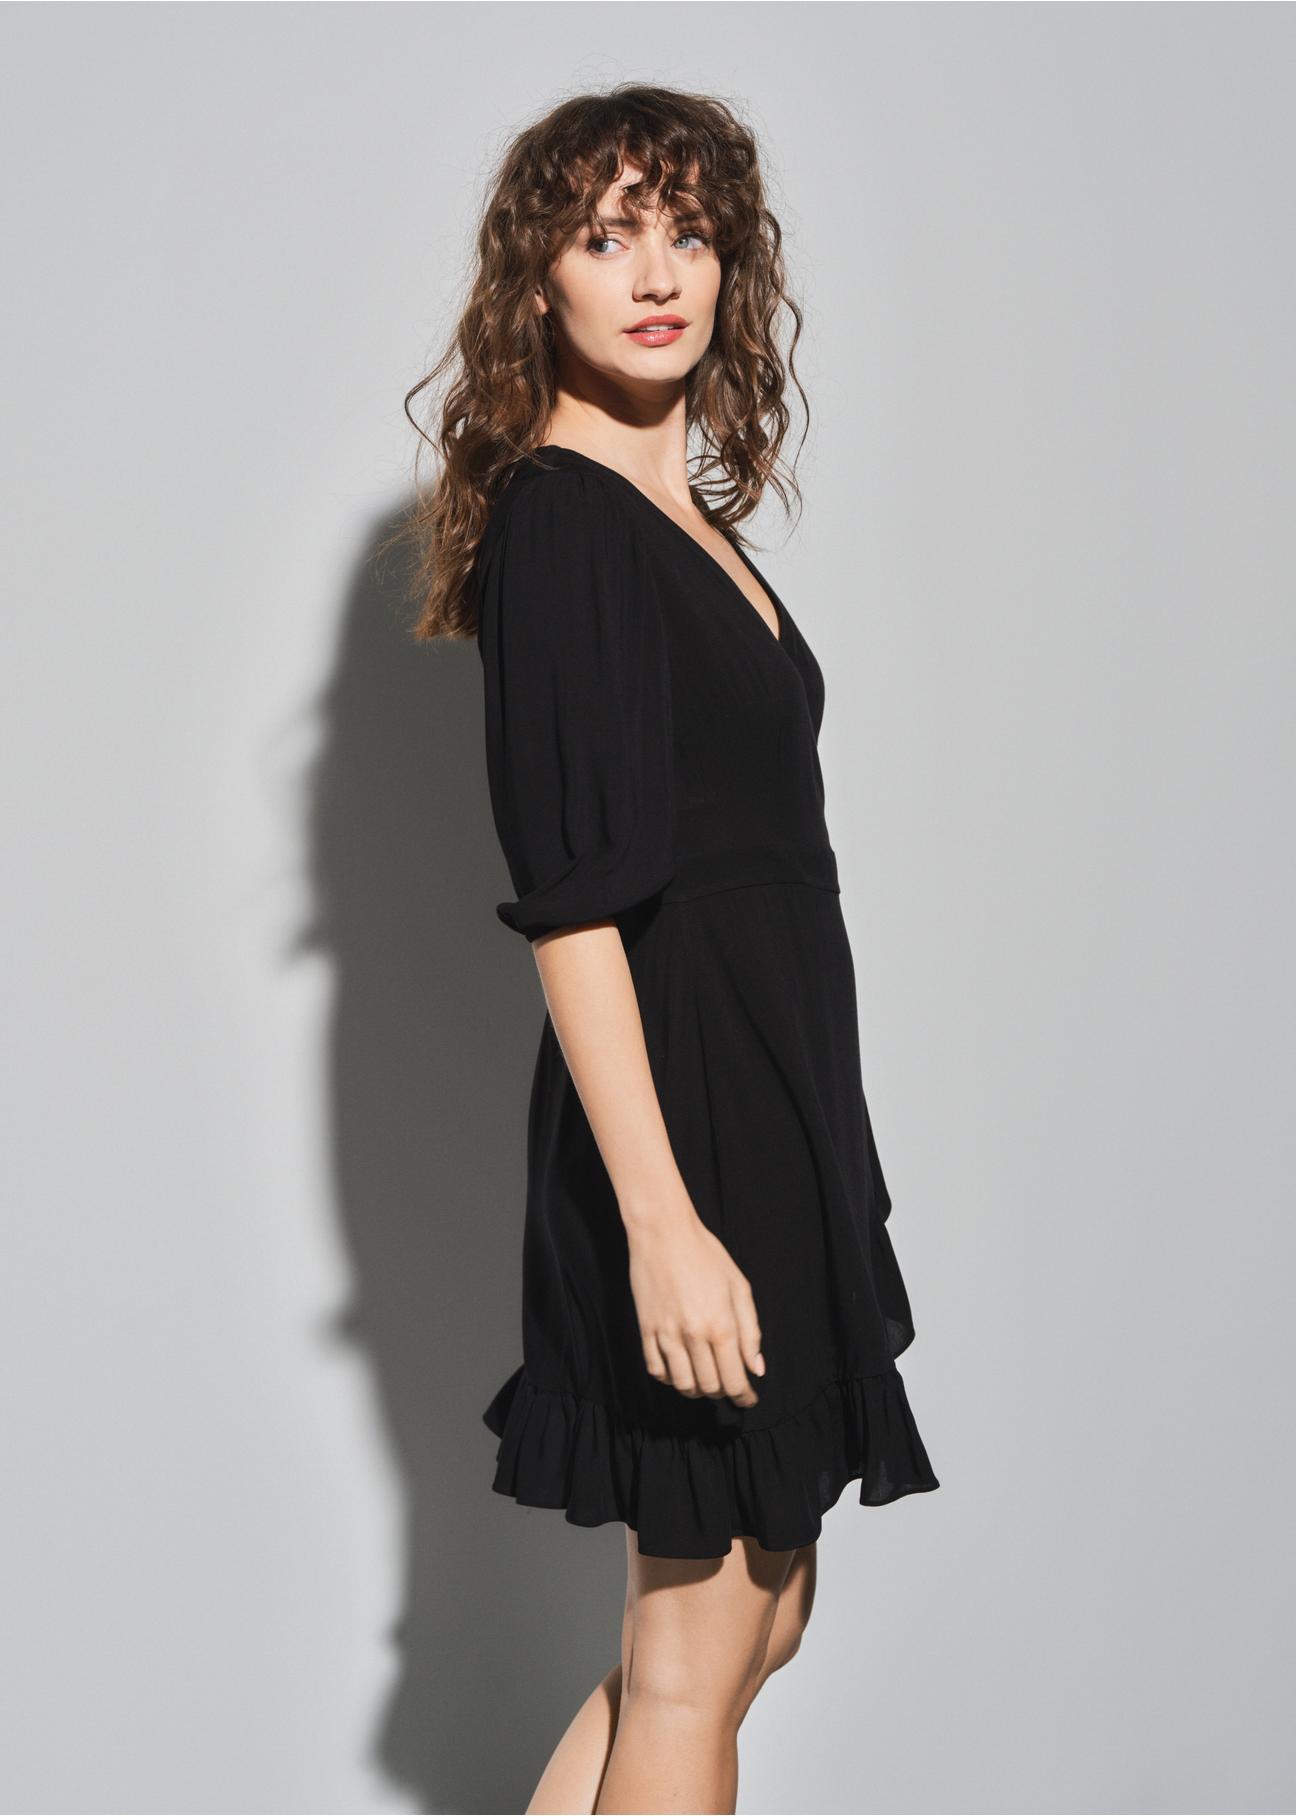 Czarna sukienka z falbanką SUKDT-0159-99(W23)